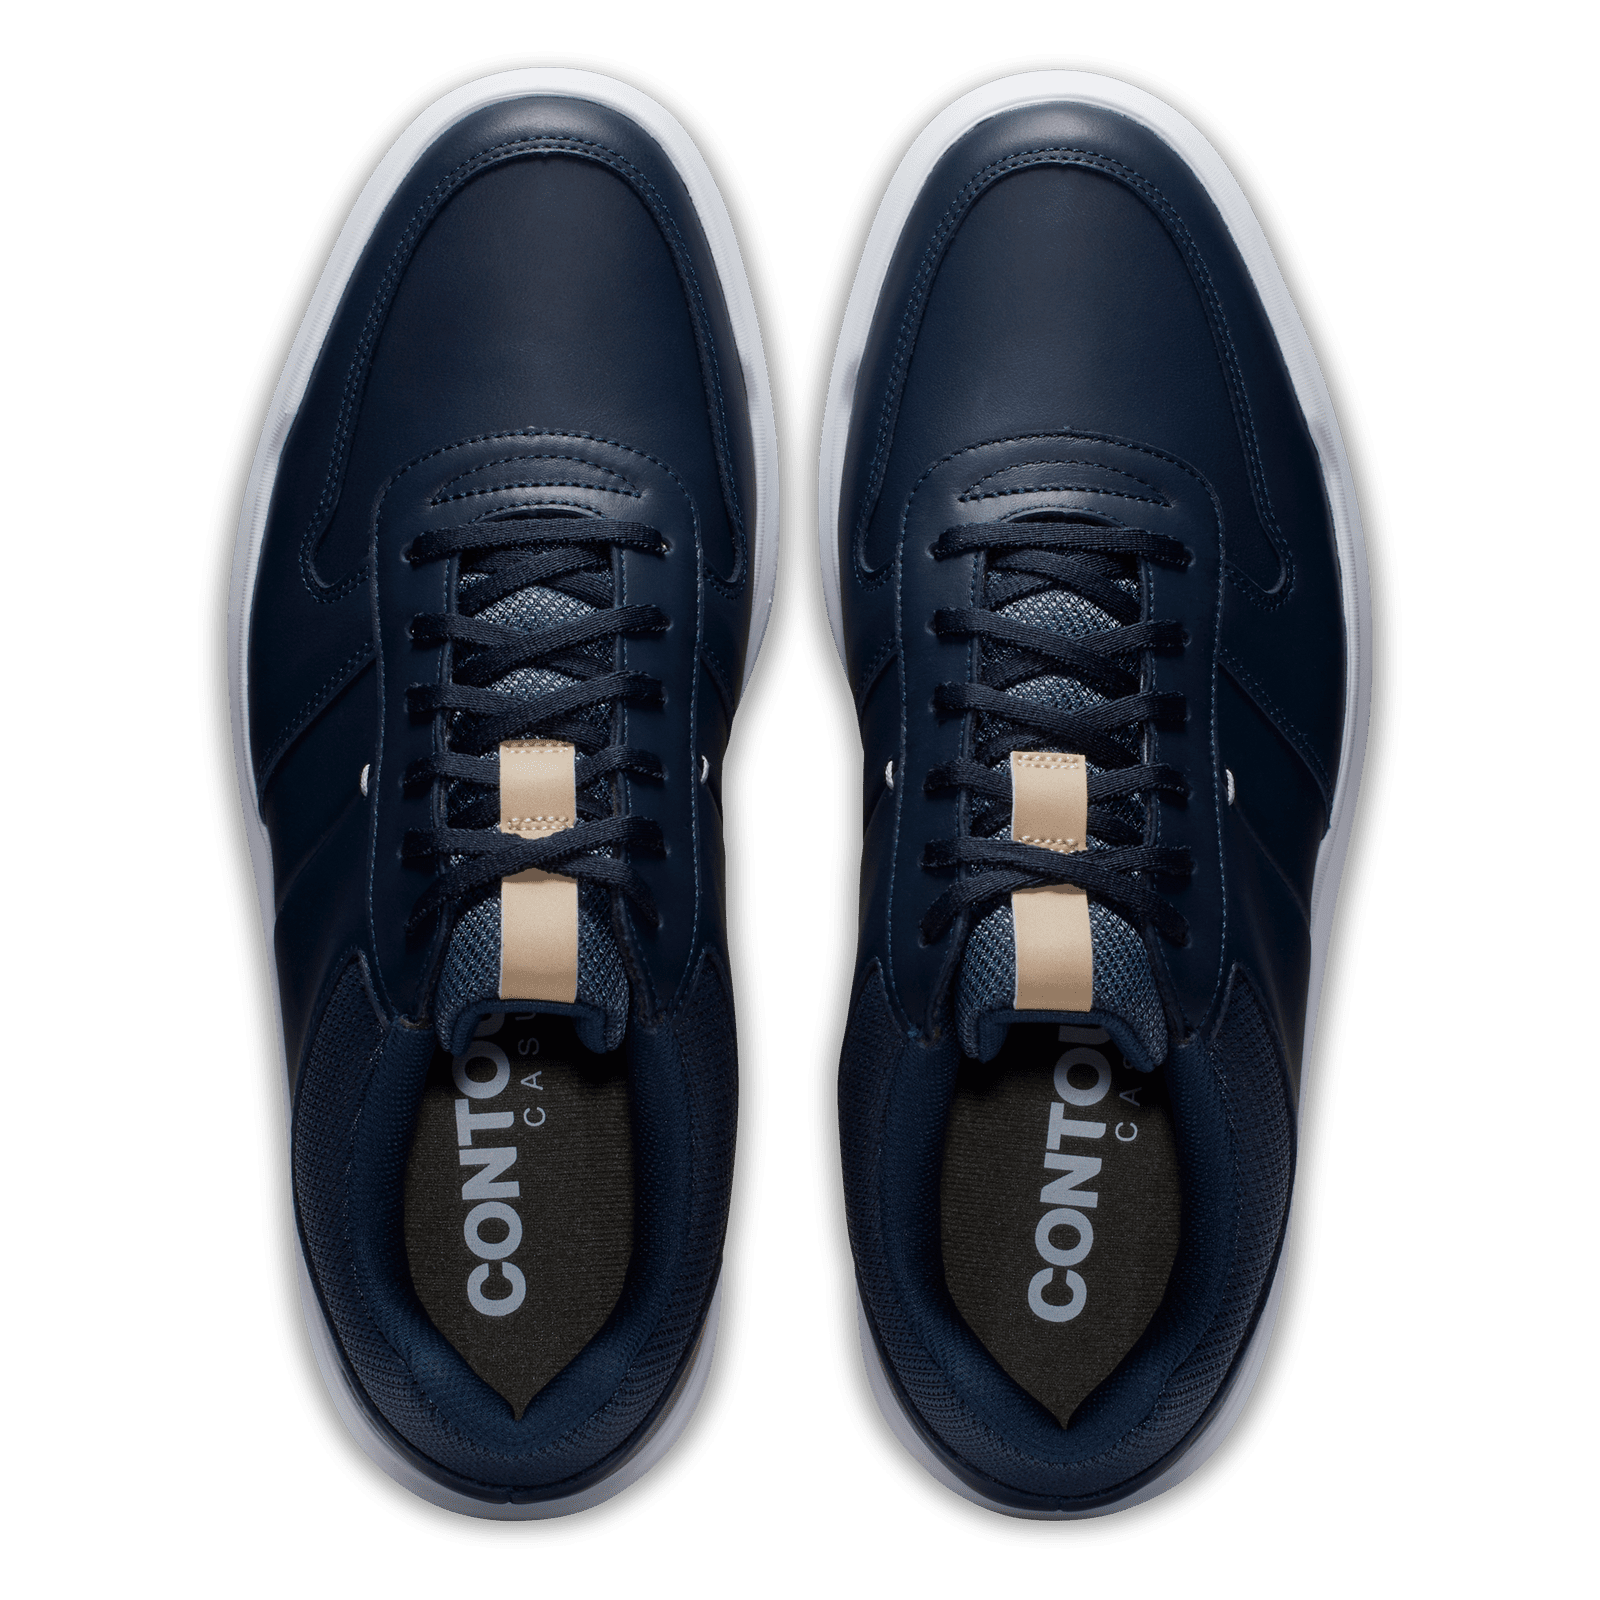 Footjoy Contour Casual Golf Shoes 54372